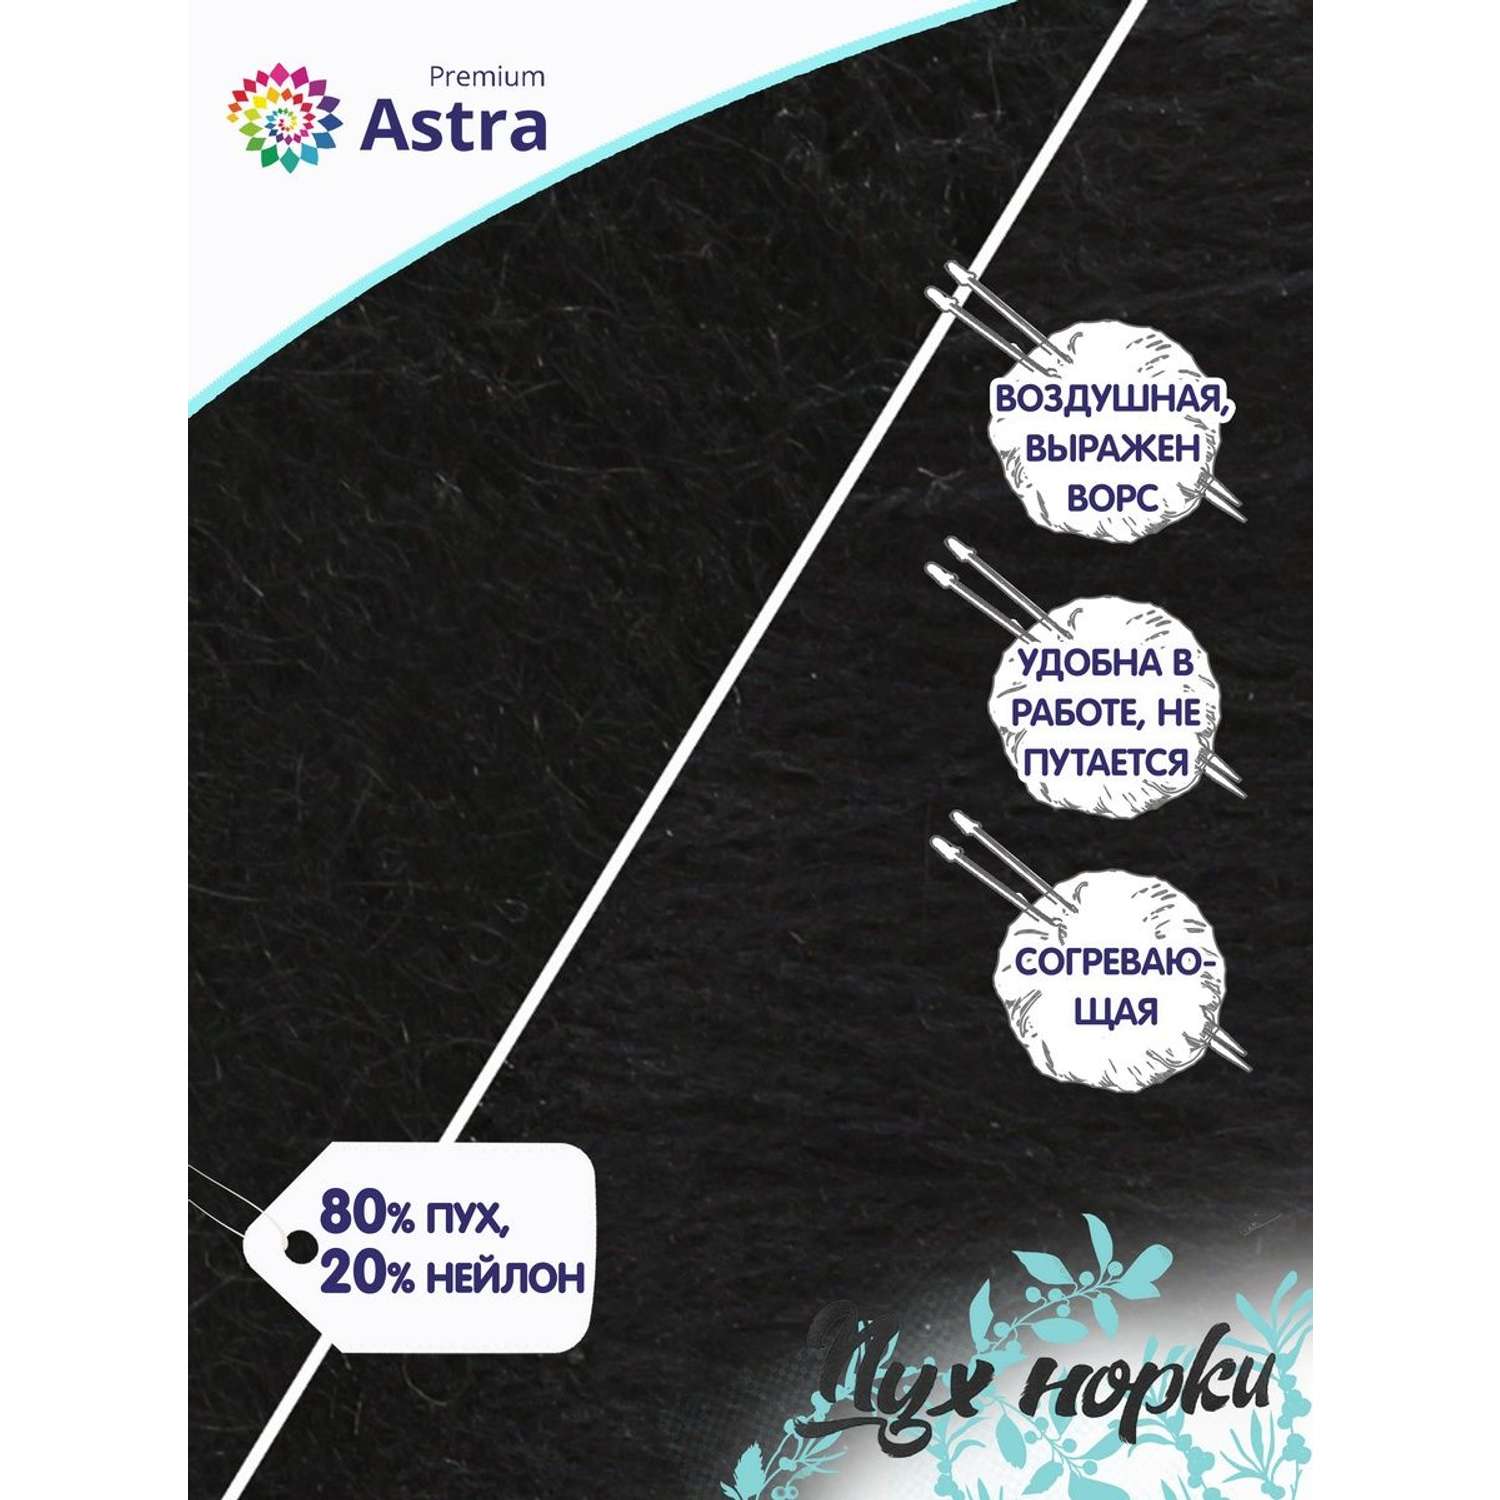 Пряжа Astra Premium Пух норки Mink yarn воздушная с ворсом 50 г 290 м 011 черный 1 моток - фото 2